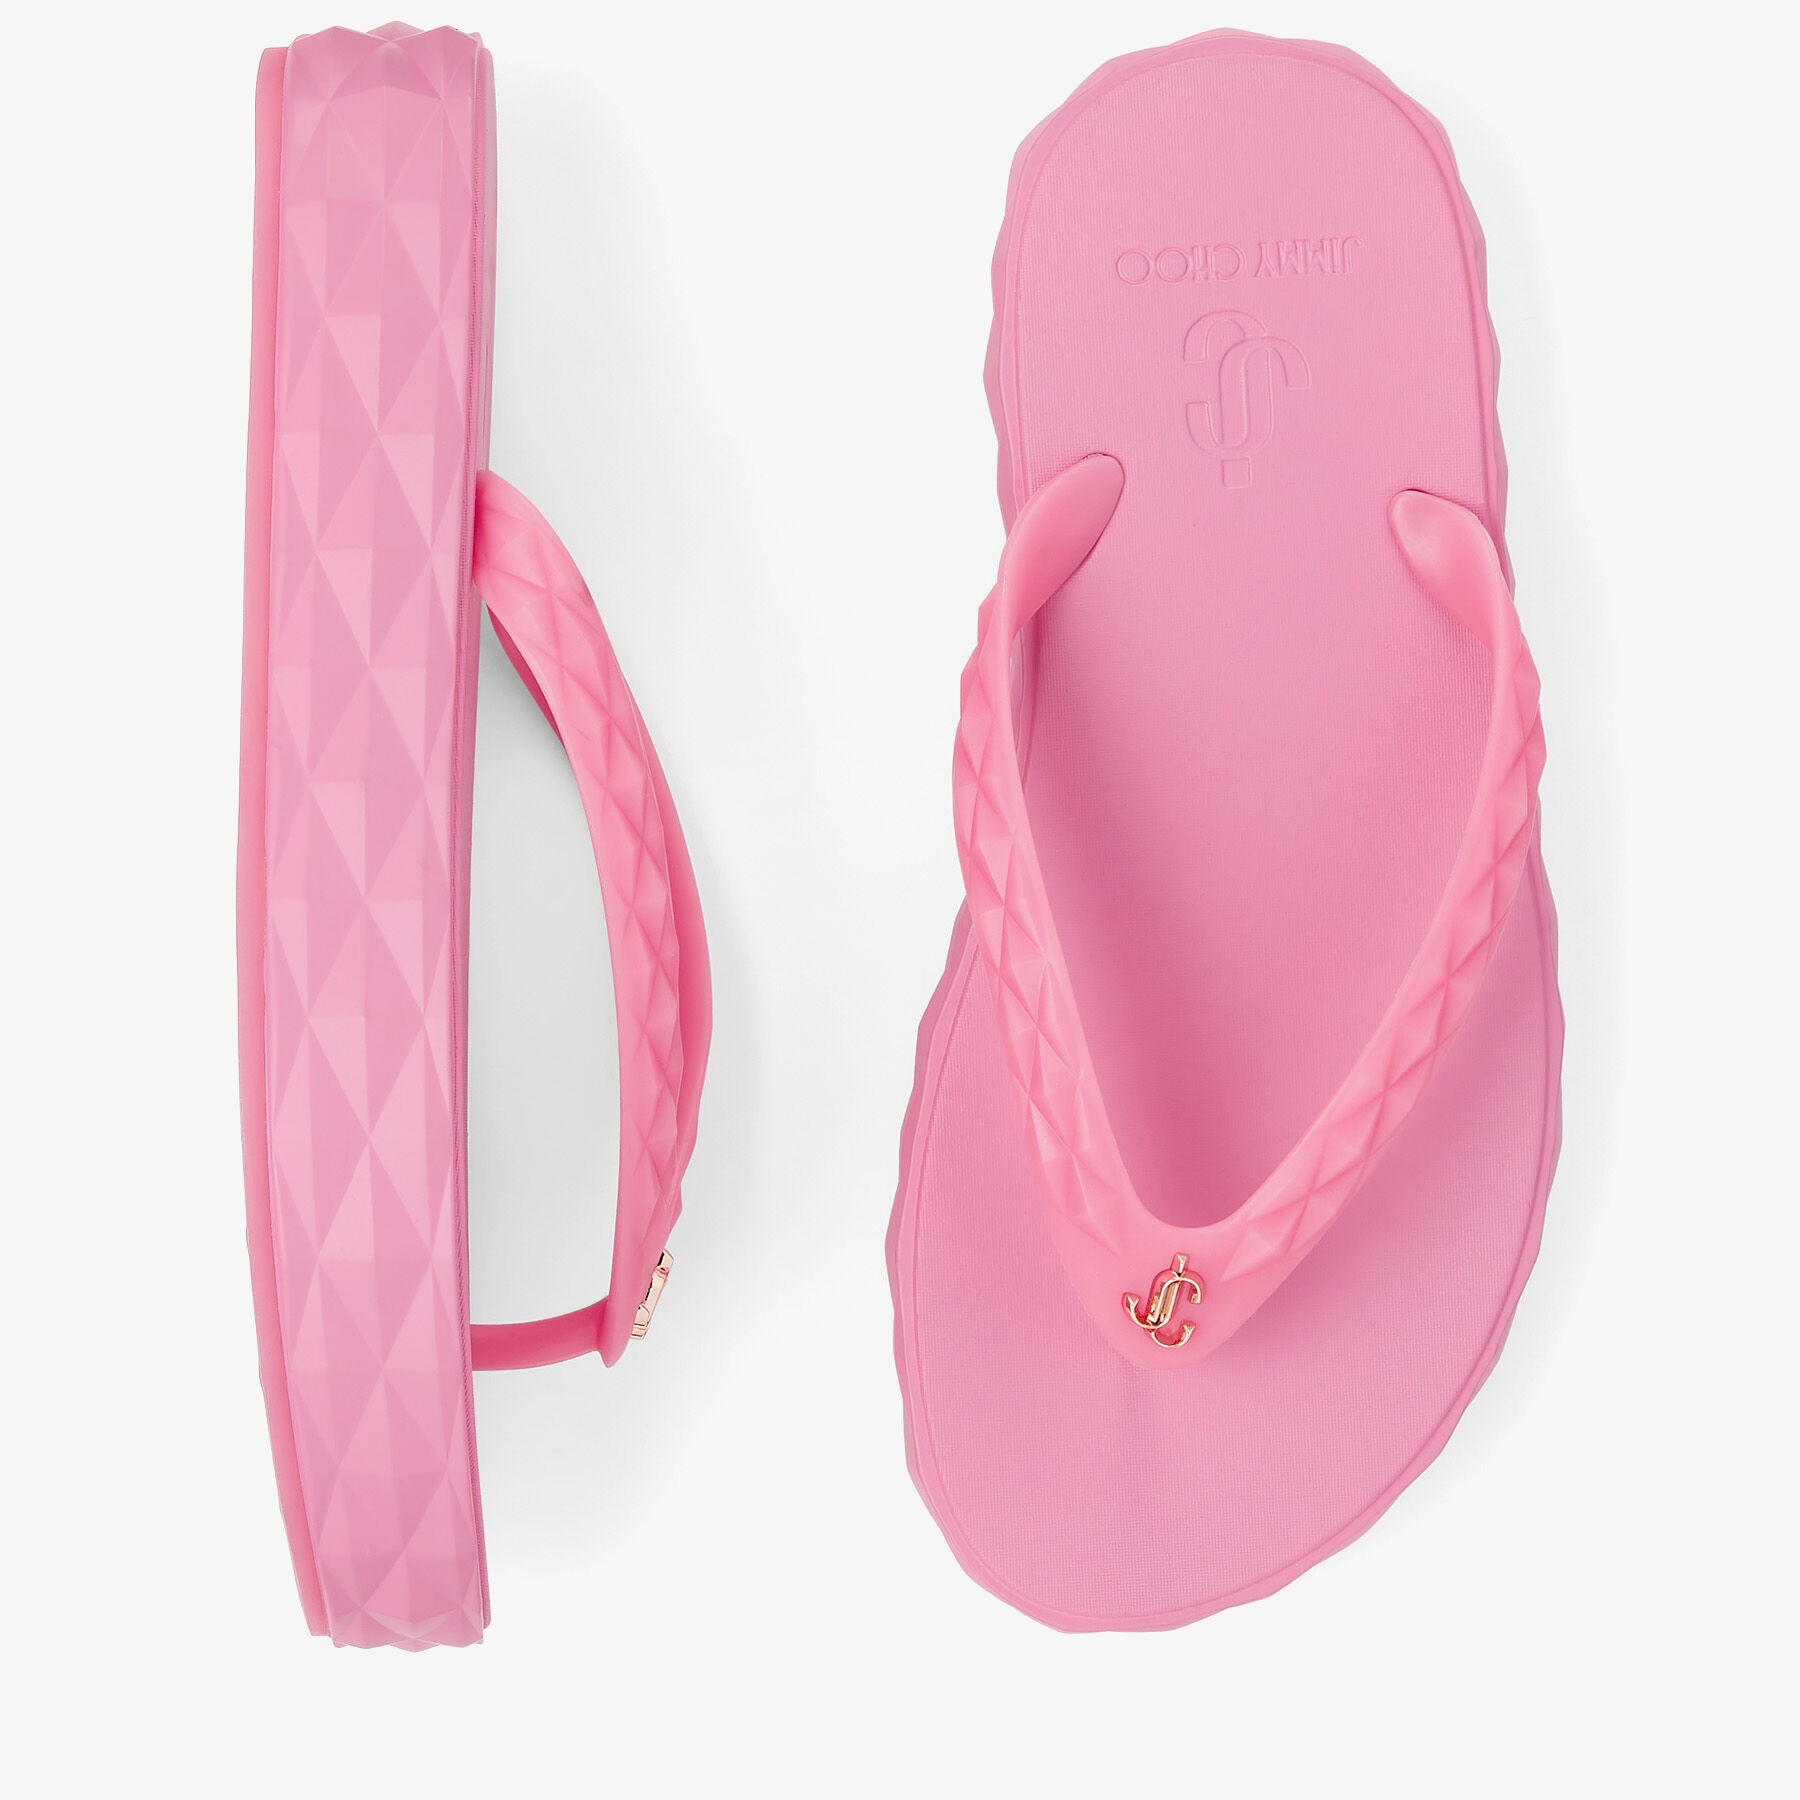 Diamond Flip Flop
Candy Pink Rubber Flip-Flops - 5